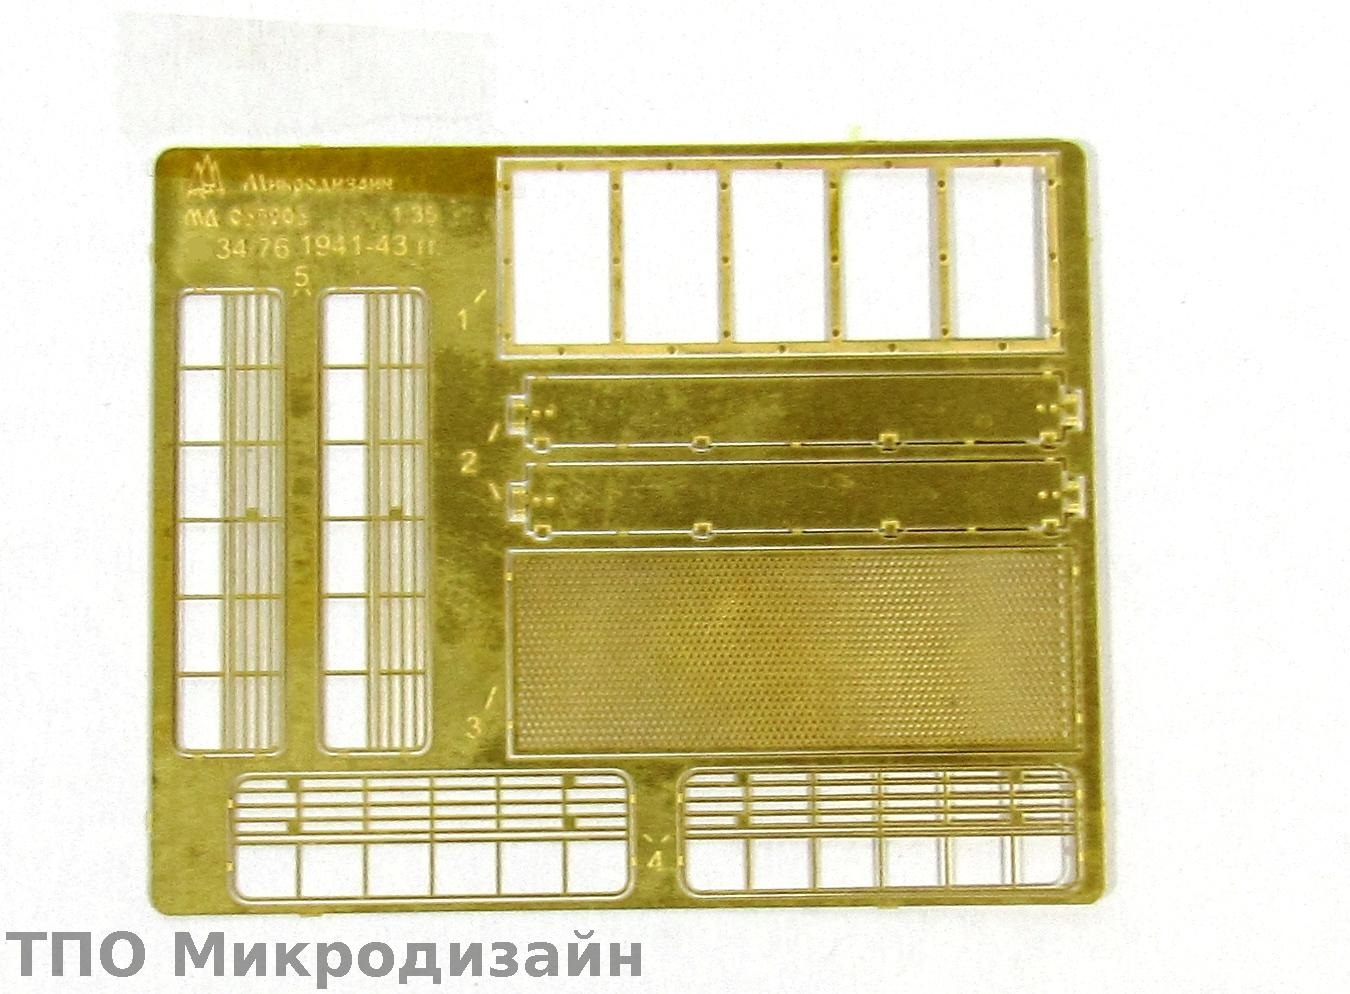 МД 035201  фототравление  Сетки для Танк-34/76 1941-43 гг. (1:35)